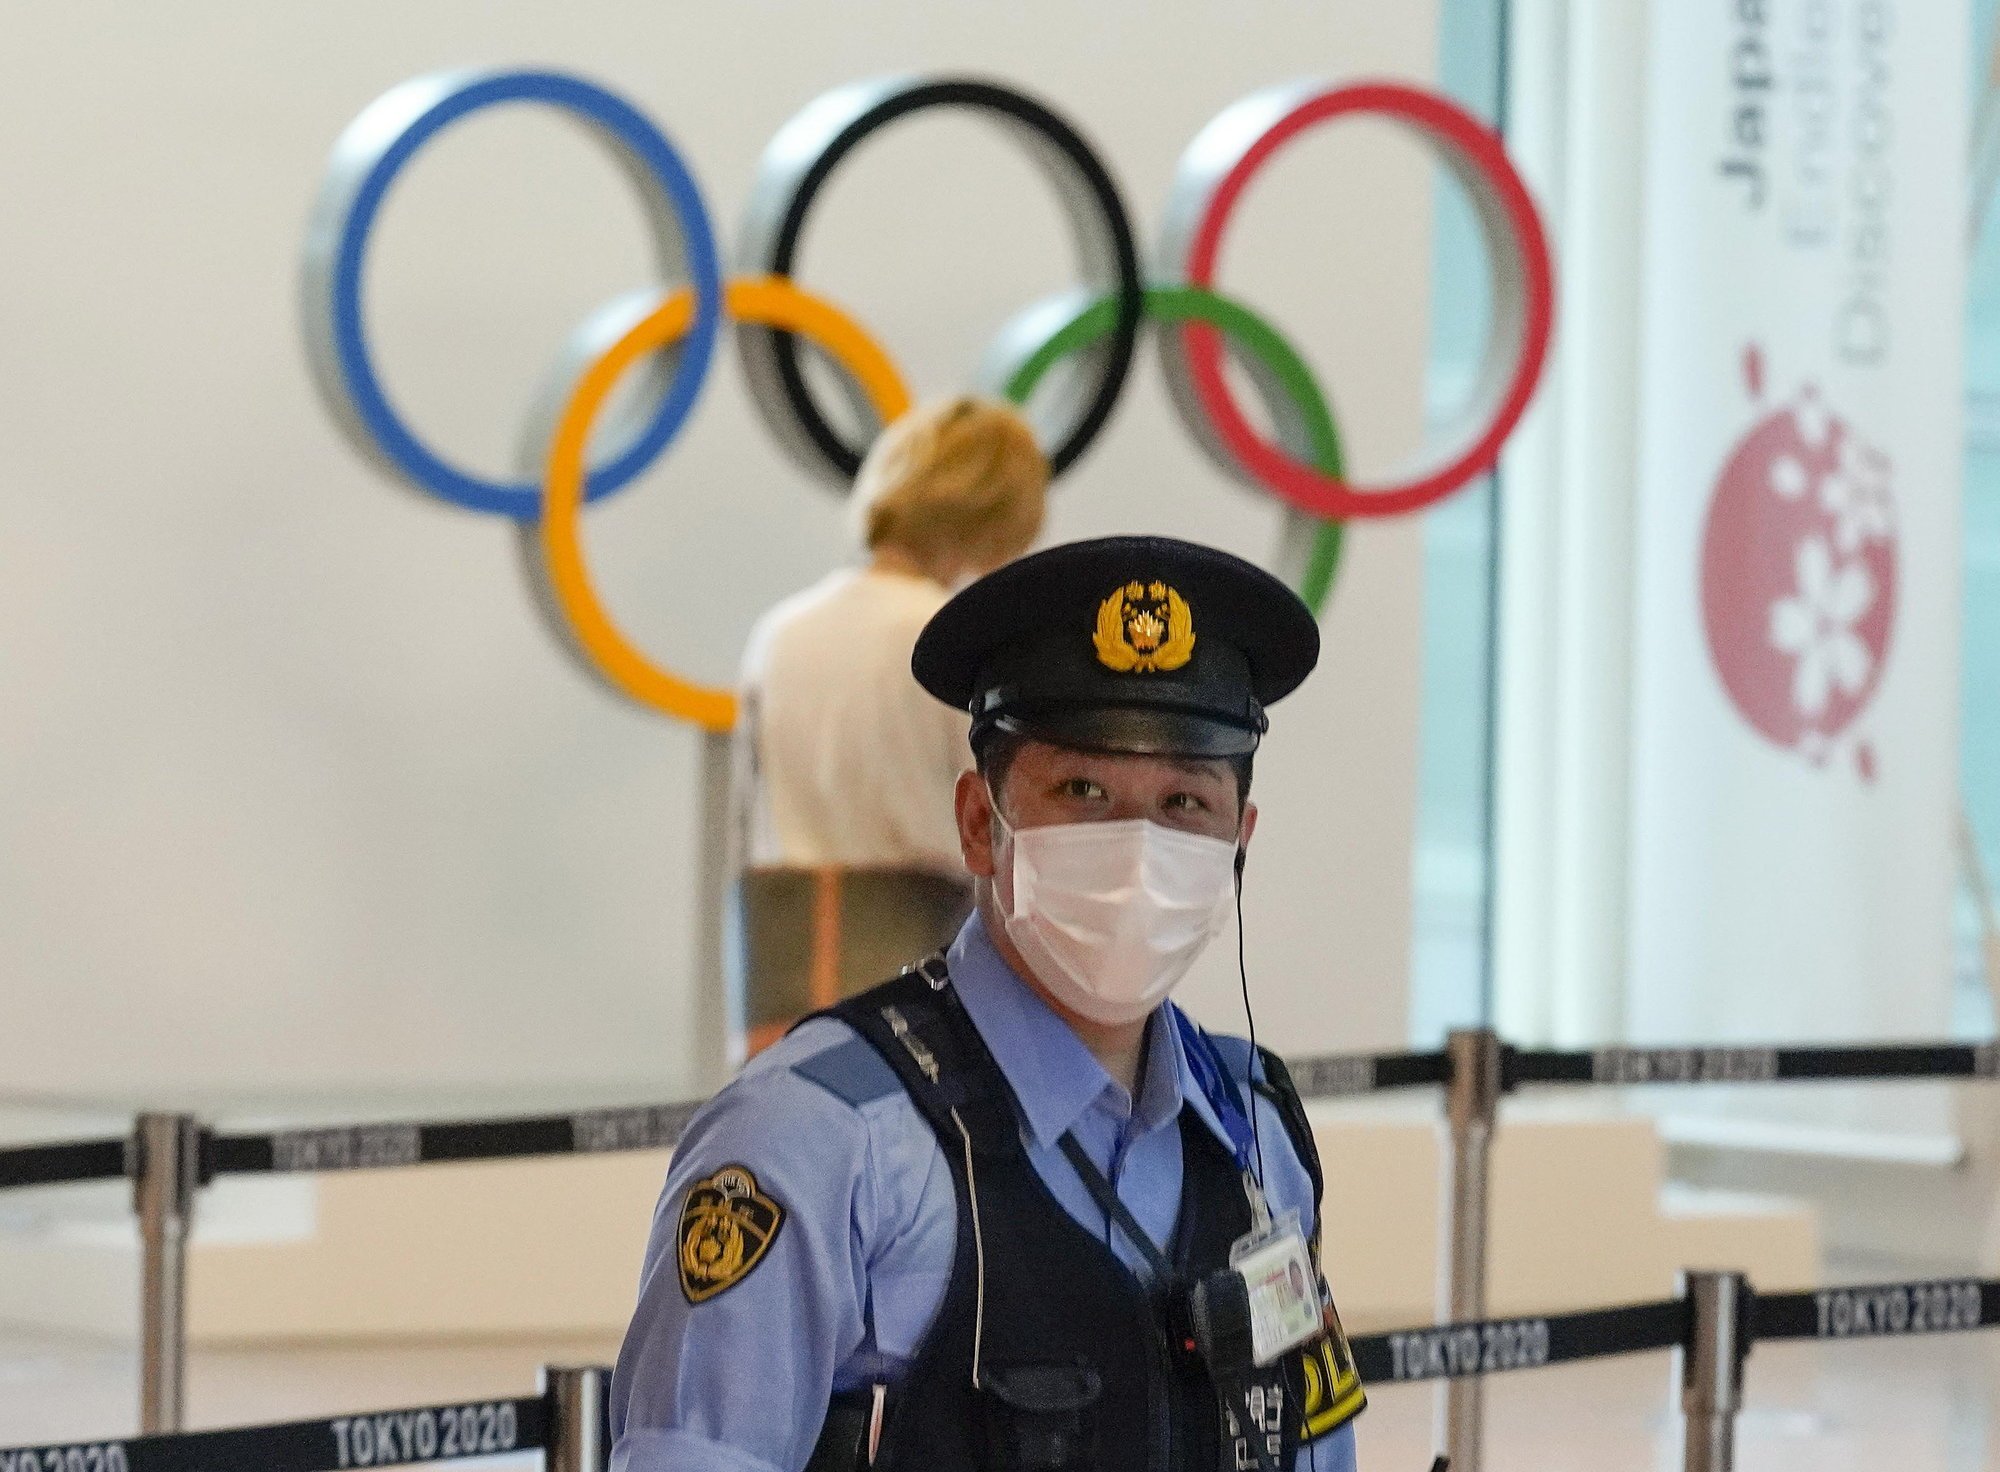 Le COVID et les contrôles de sécurité sanitaires, comme ici sur l'un des aéroports de Tokyo, font davantage l'actualité que la dimension sportive des Jeux pour l'instant.